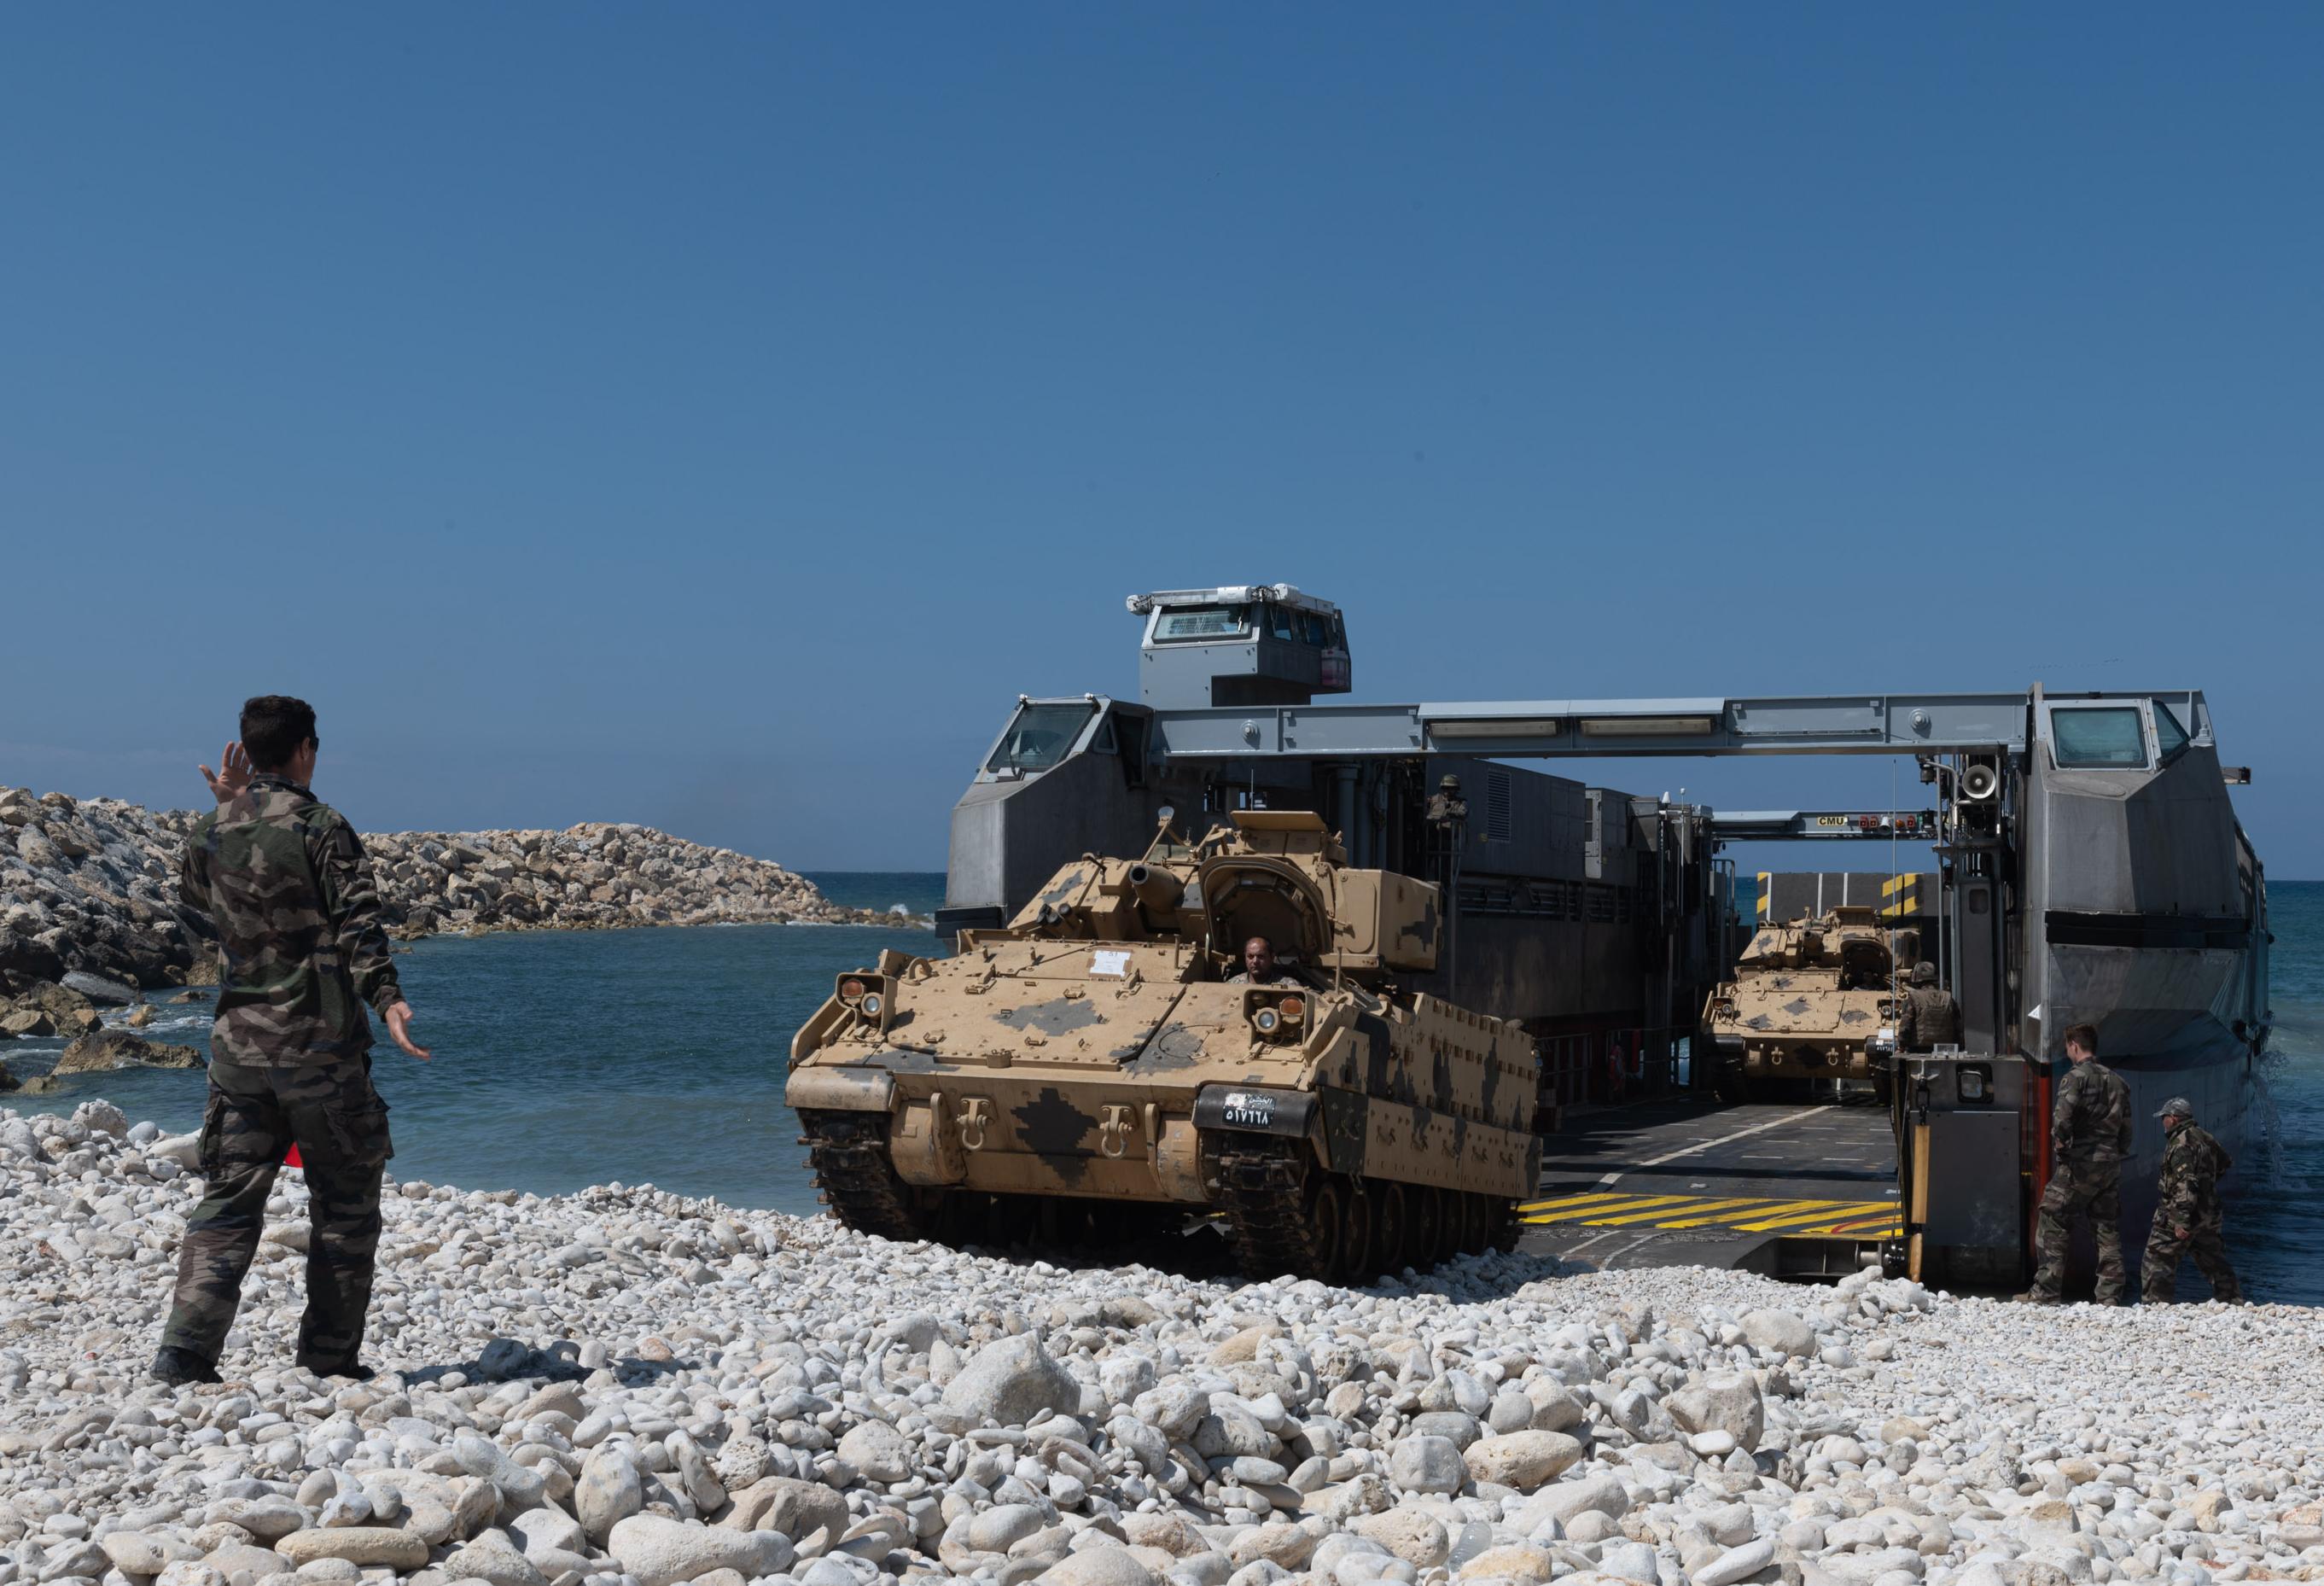  LIBAN – Les armées françaises aux côtés de leurs partenaires libanais pour l’activité de coopération CEDRE BLEU